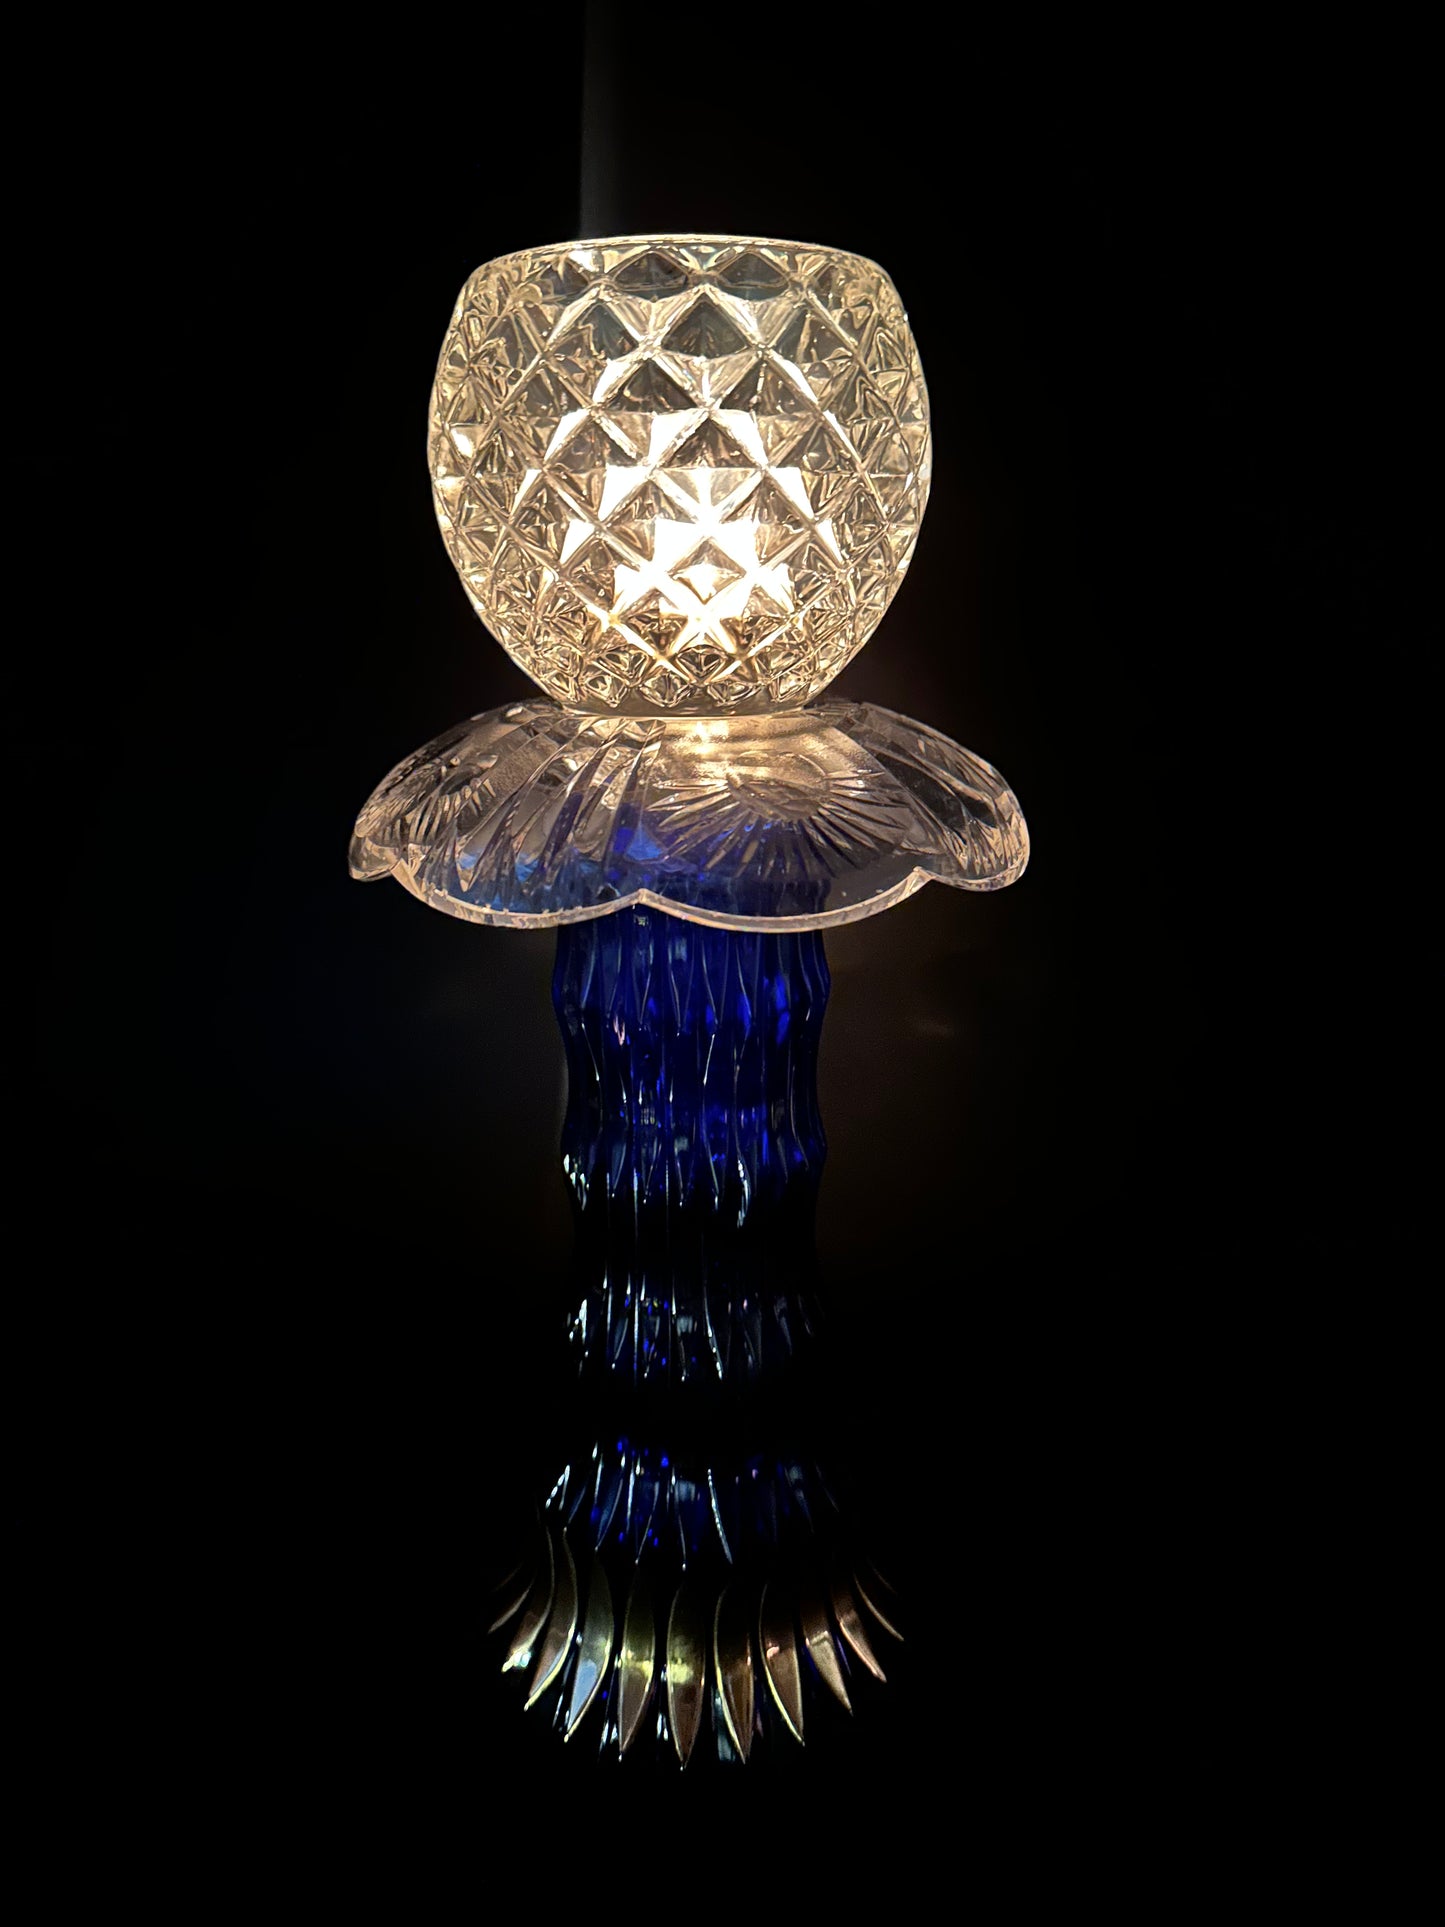 Solcellelampe med kongeblå fot og lyseblått krystallfat